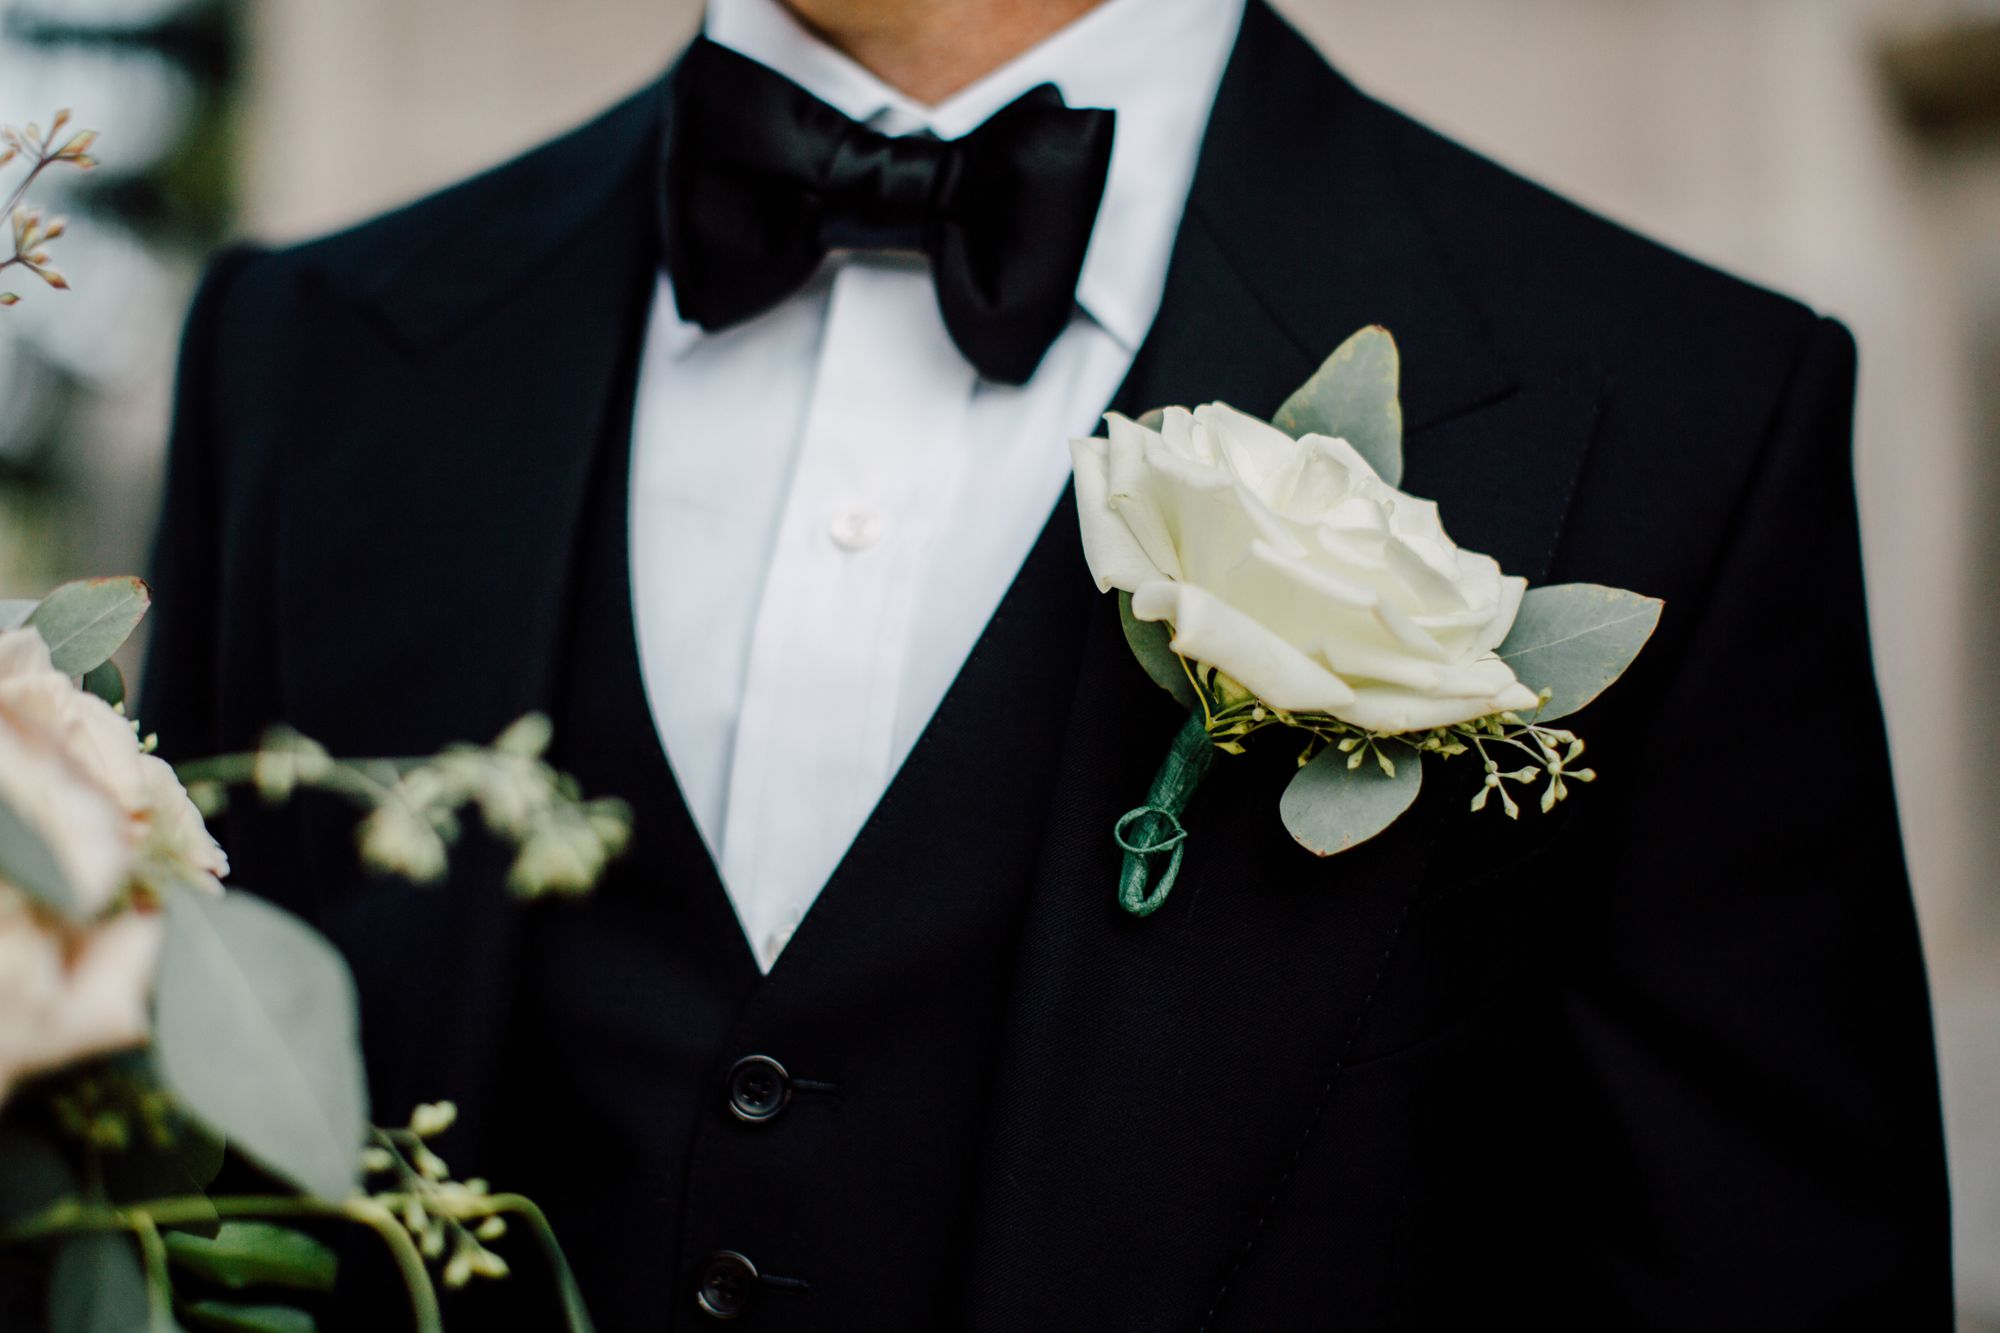 Ein Bräutigam im schwarzen Smoking mit einer weißen Blume am Revers.